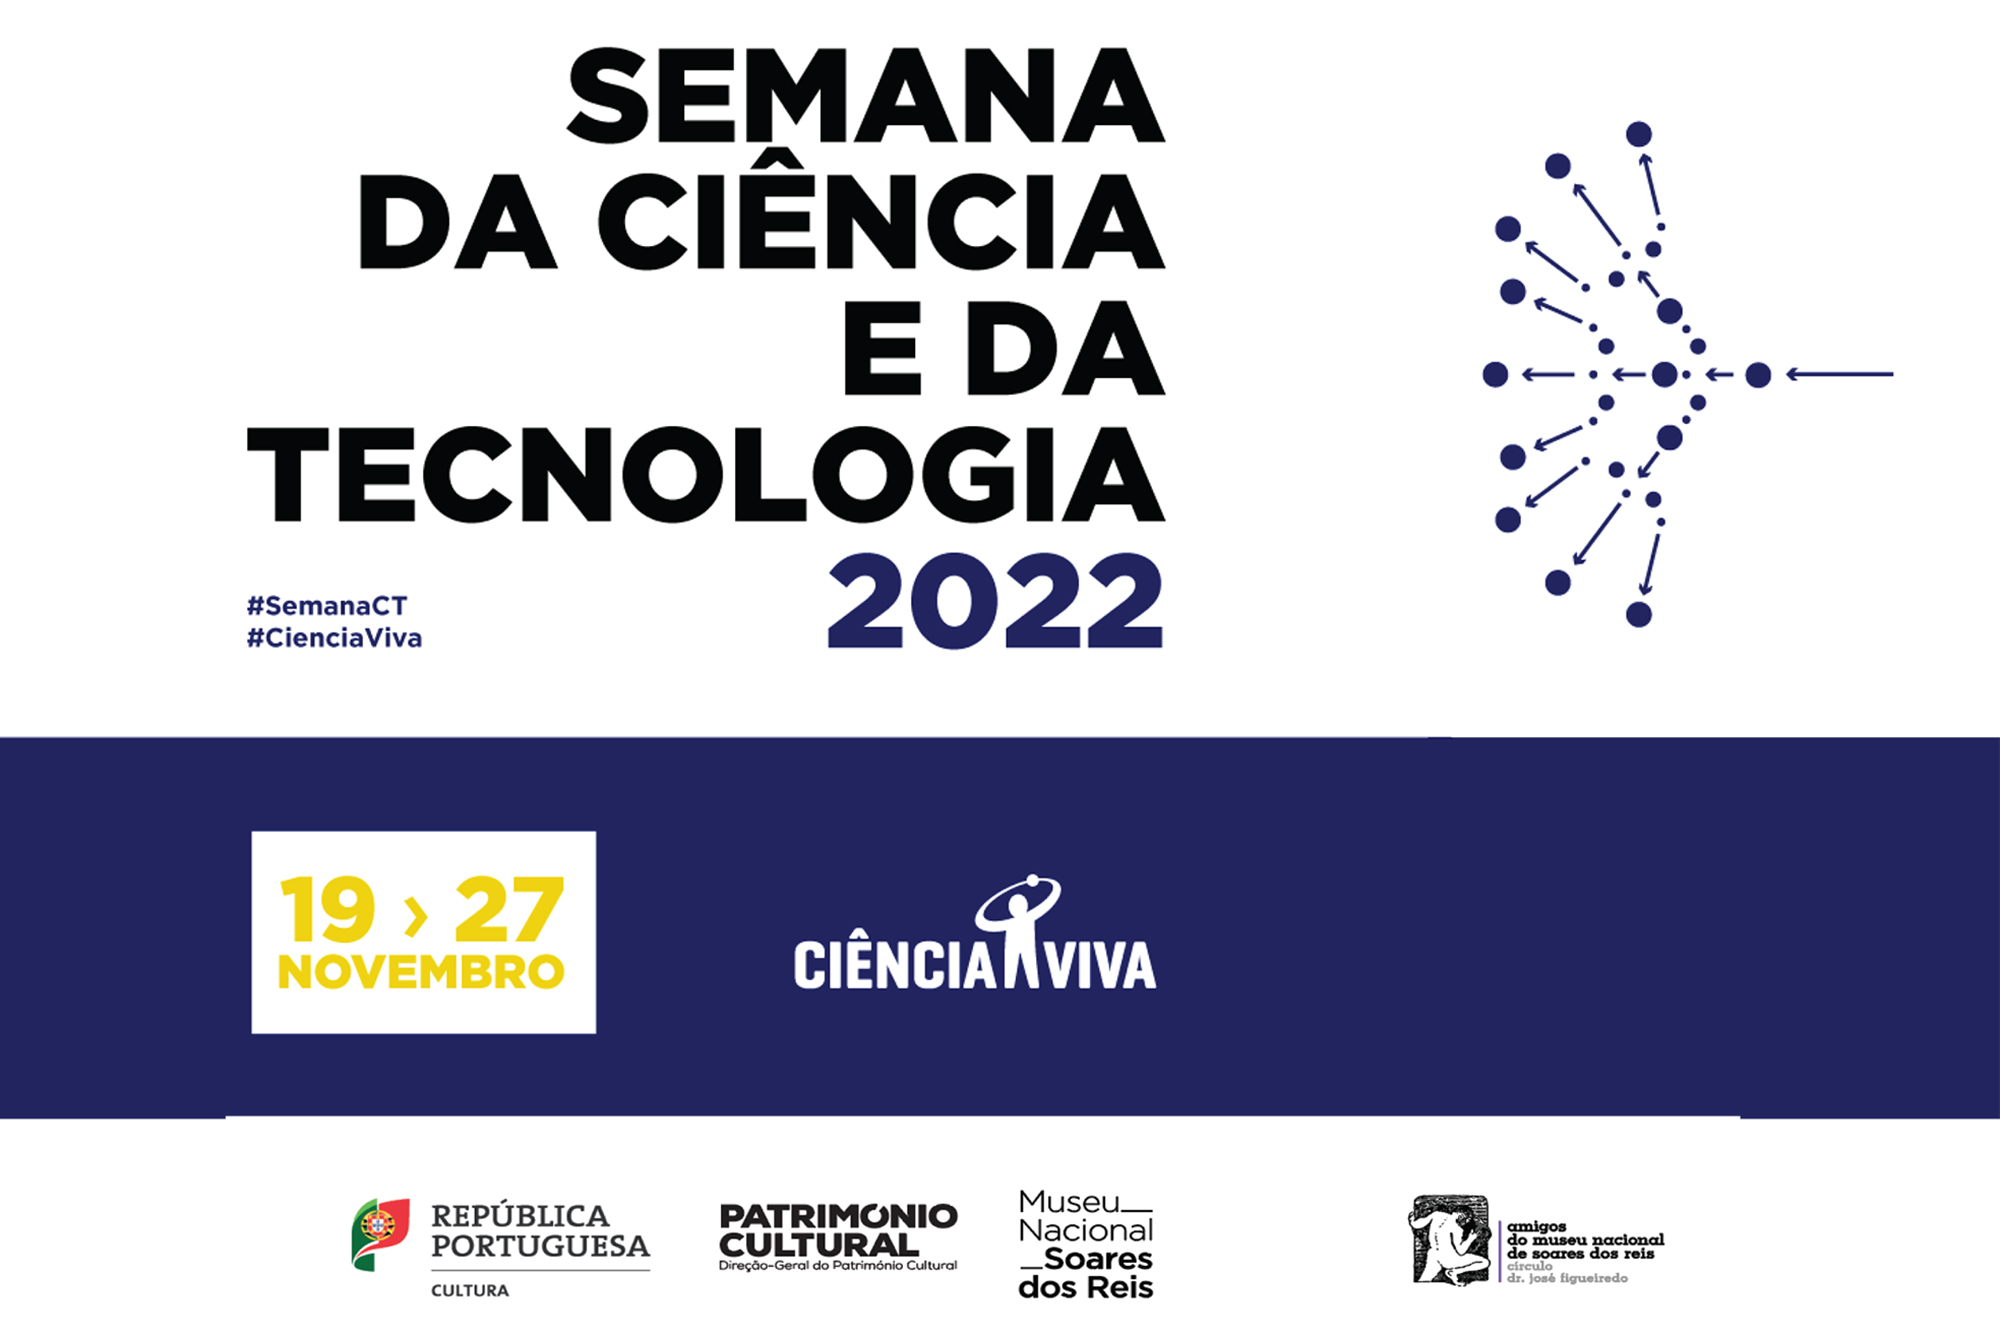 Semana da Ciência e da Tecnologia 2022